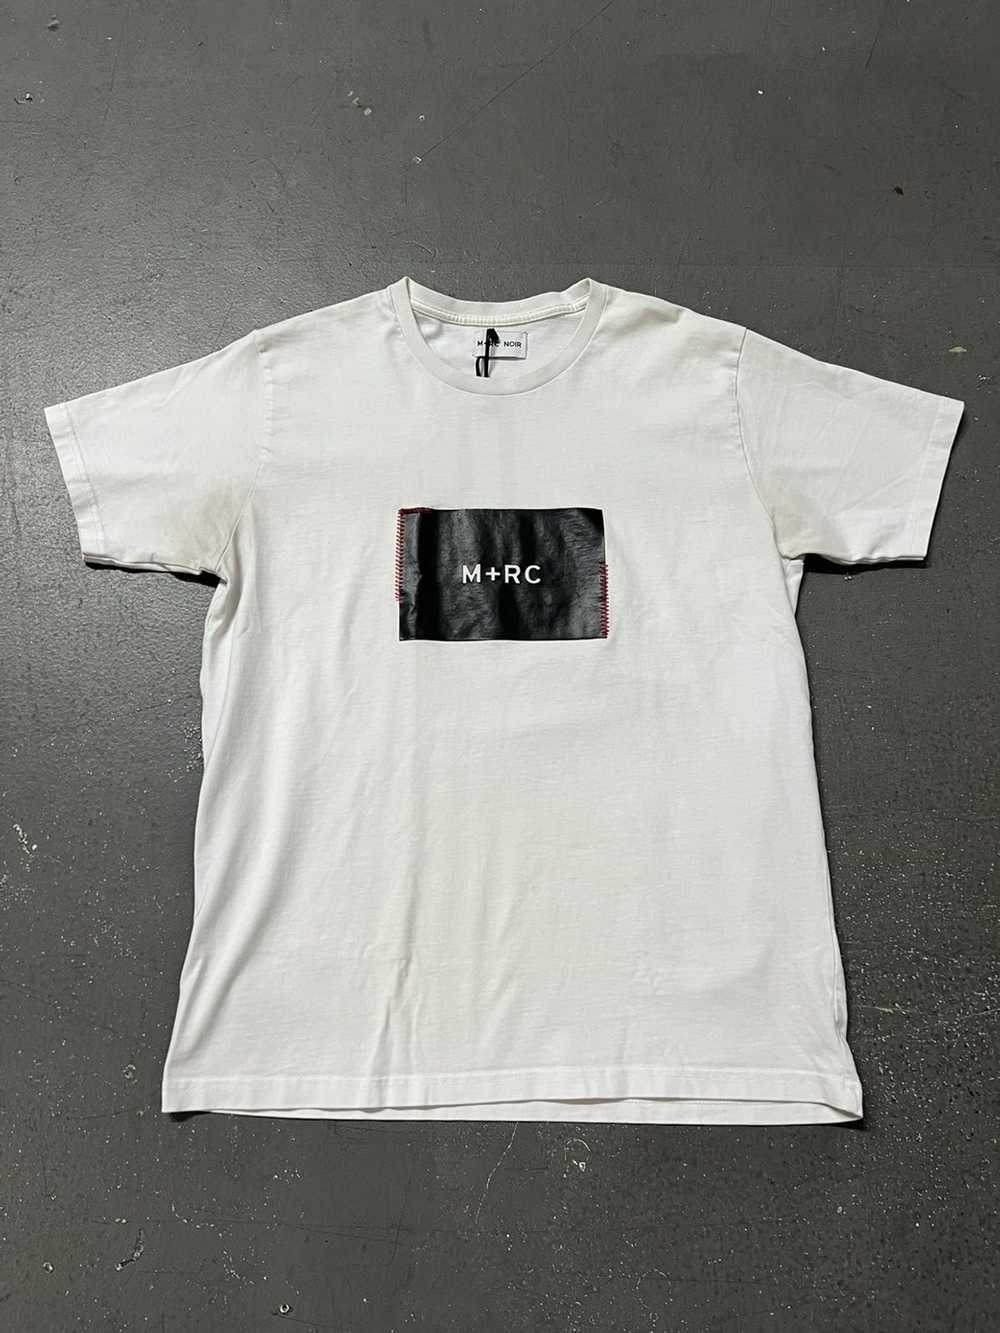 M+Rc Noir M+RC Noir T-shirt Size Medium - image 1